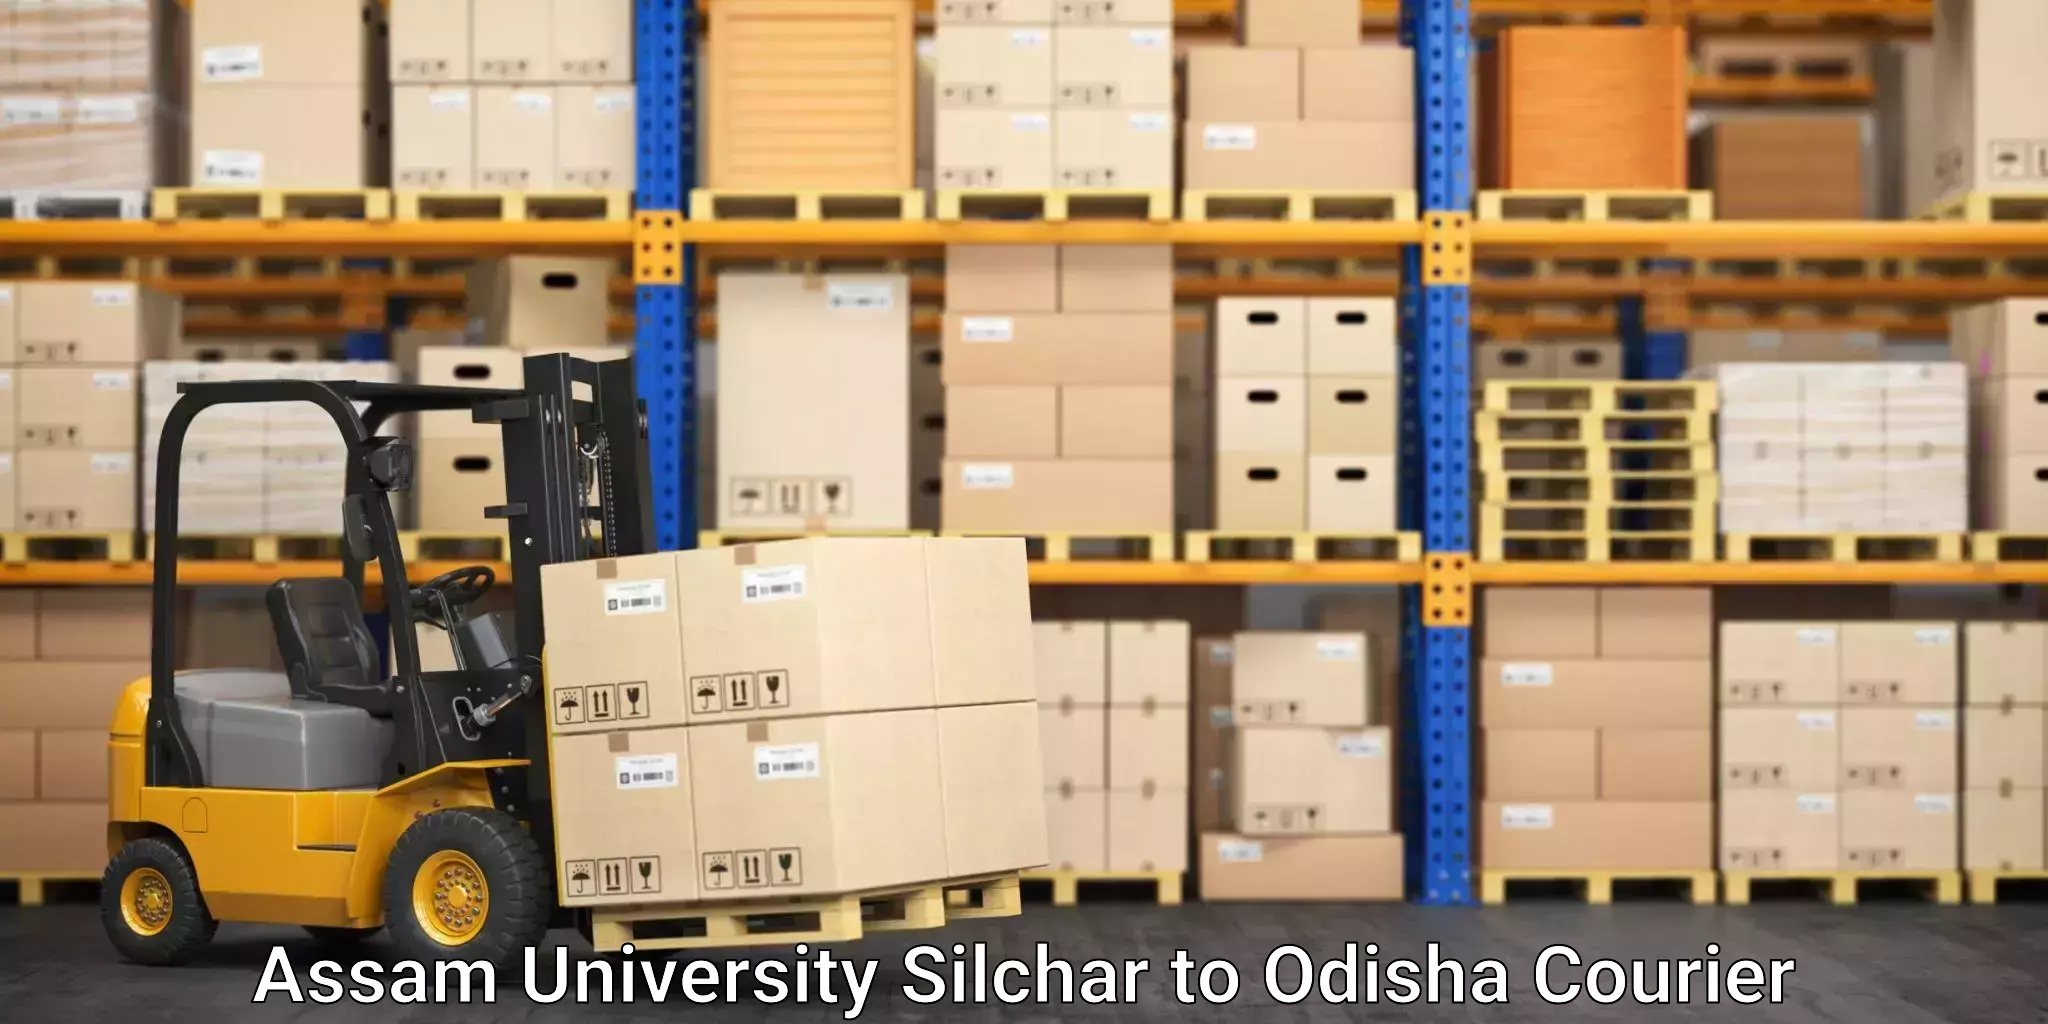 Affordable parcel service Assam University Silchar to Keonjhar